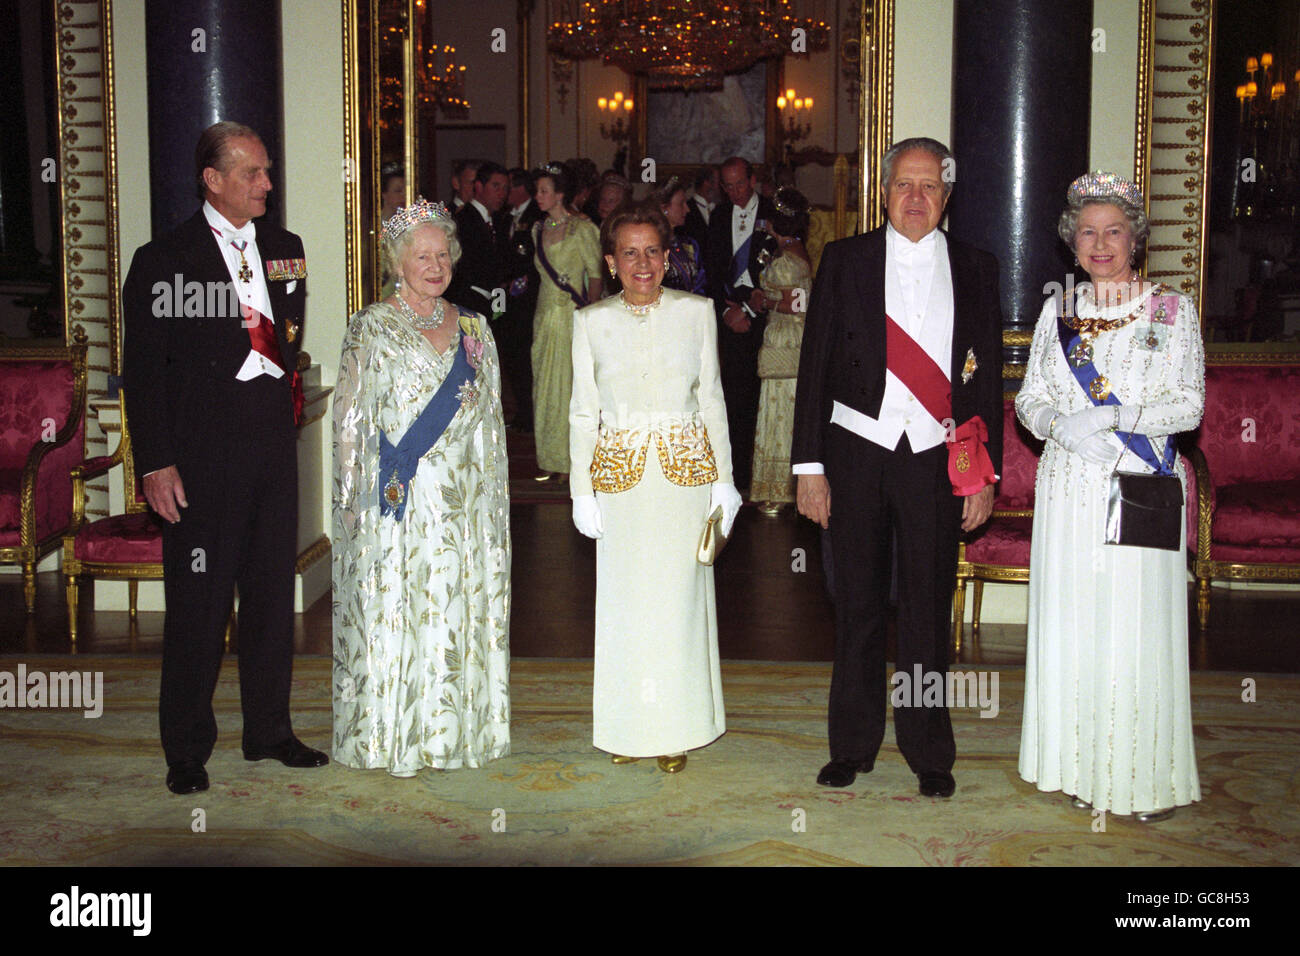 Le Président du Portugal assiste à un banquet d'État au Palais de Buckingham en l'honneur de sa visite. De gauche à droite : le prince Philip, duc d'Édimbourg, la reine Elizabeth, la reine mère, Maria Barroso, épouse du président, le président Mario Soares du Portugal et la reine Elizabeth II Banque D'Images